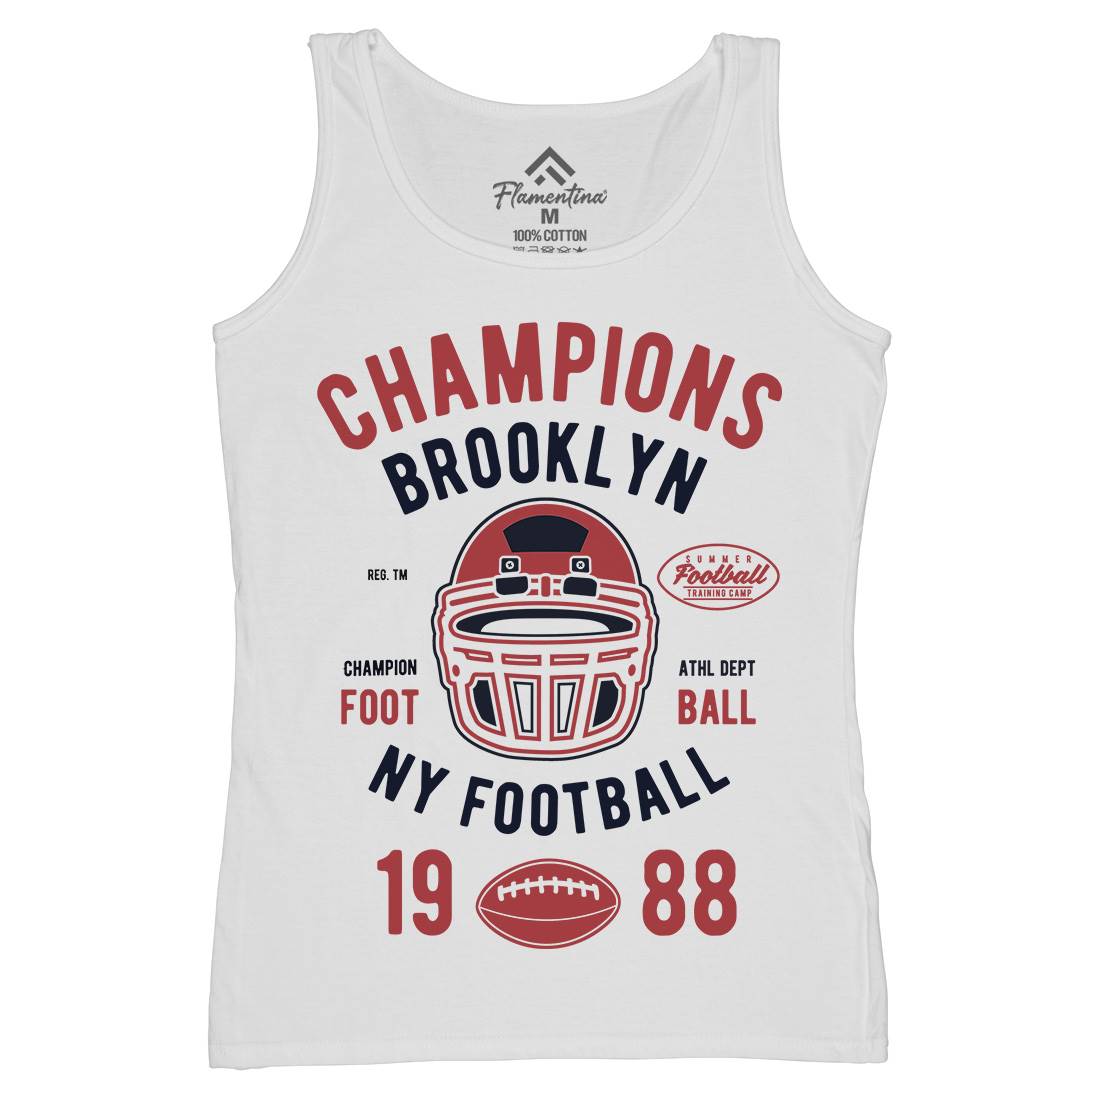 Champion Brooklyn Football Womens Organic Tank Top Vest Sport B394